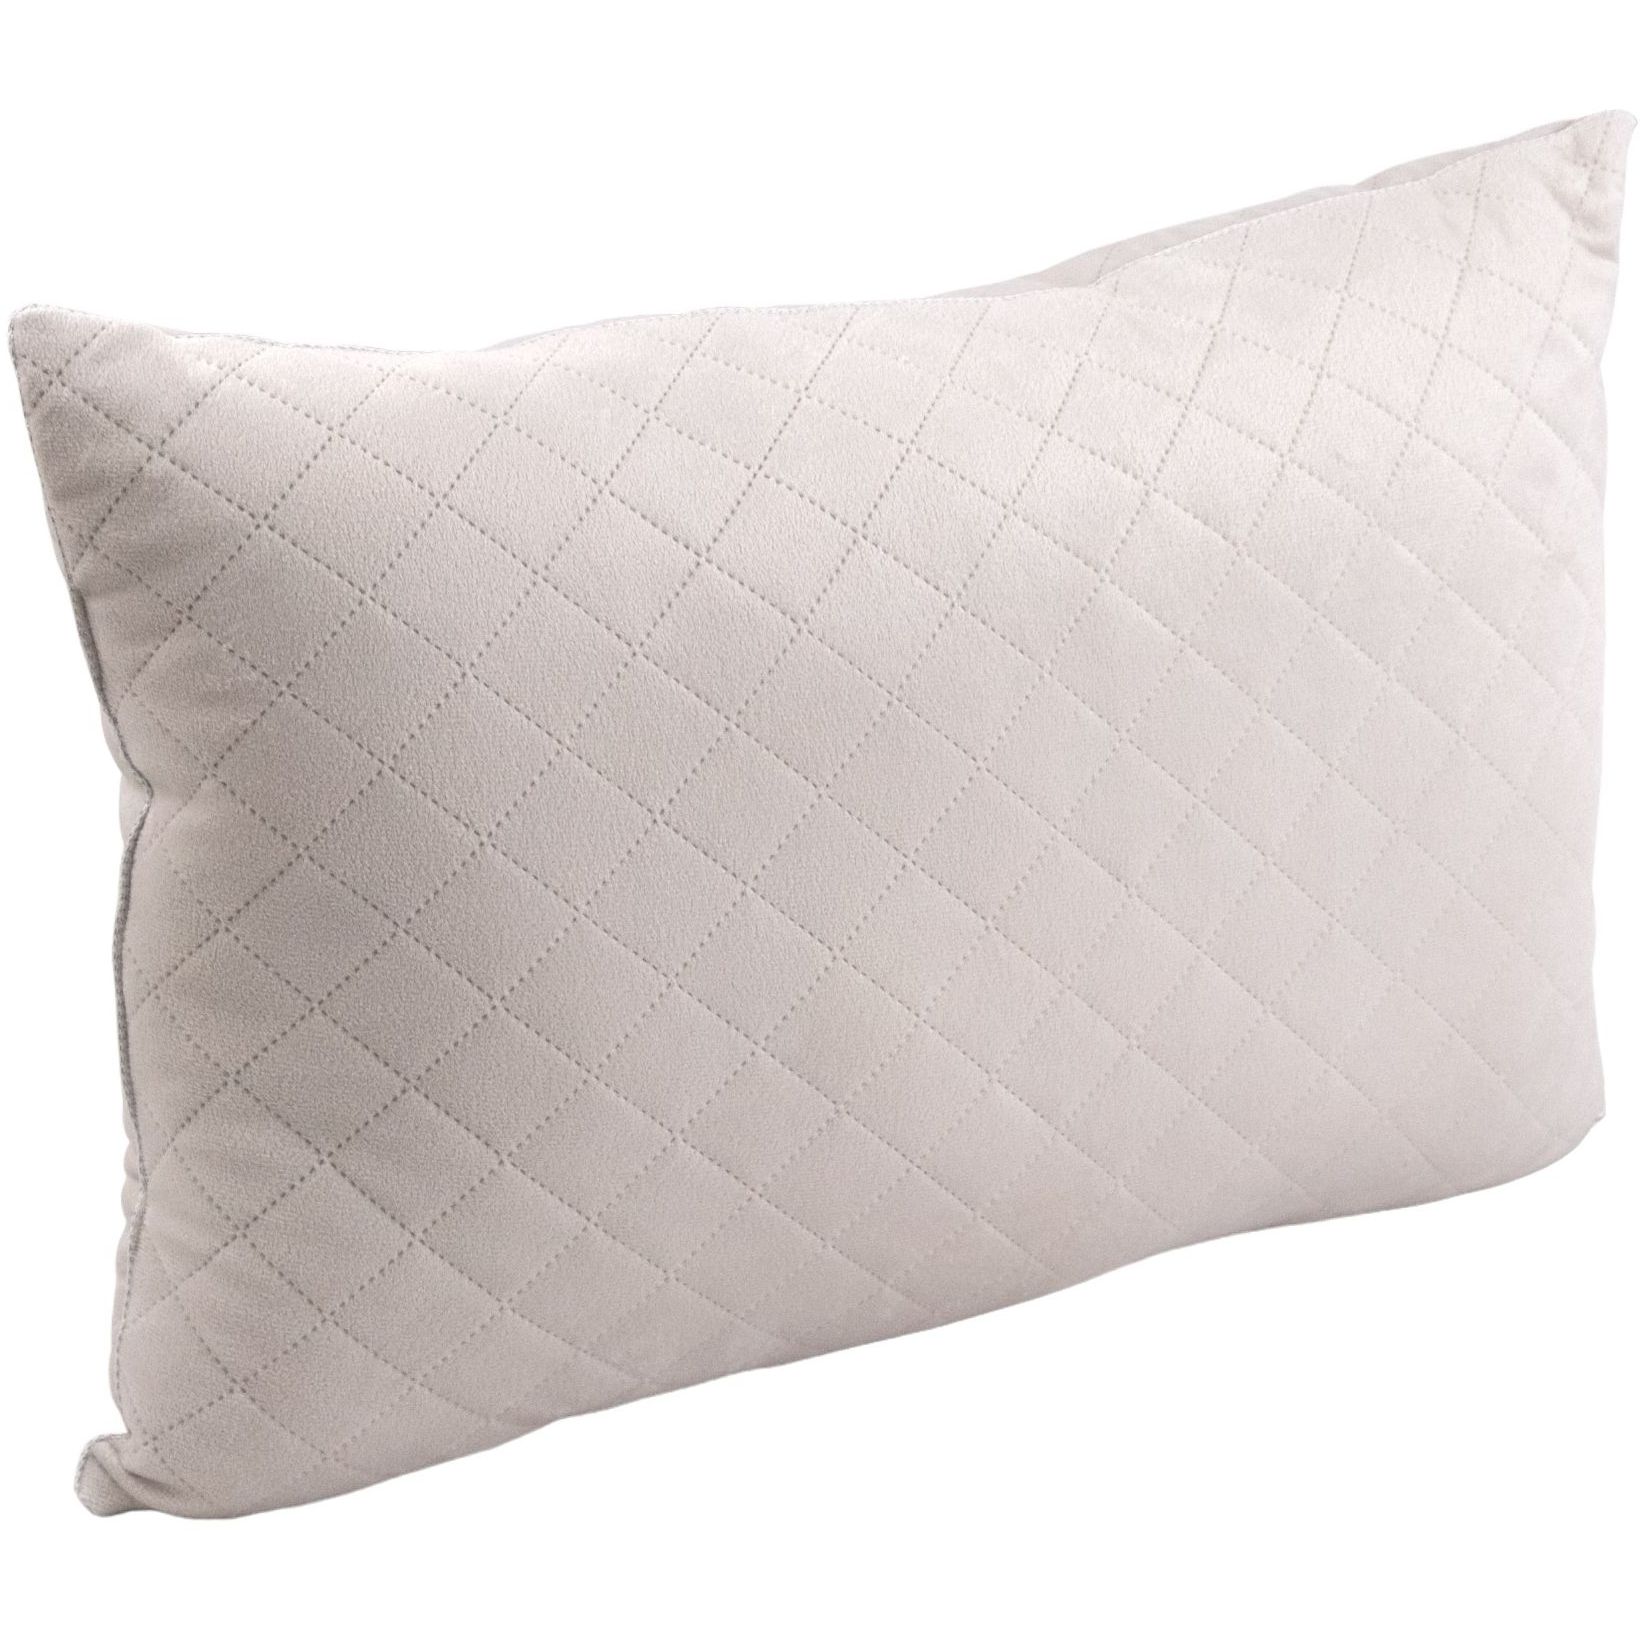 Набор силиконовый Руно Soft Pearl, бежевый: одеяло, 220х200 см + подушка 2 шт., 50х70 см (925.55_Soft Pearl) - фото 3